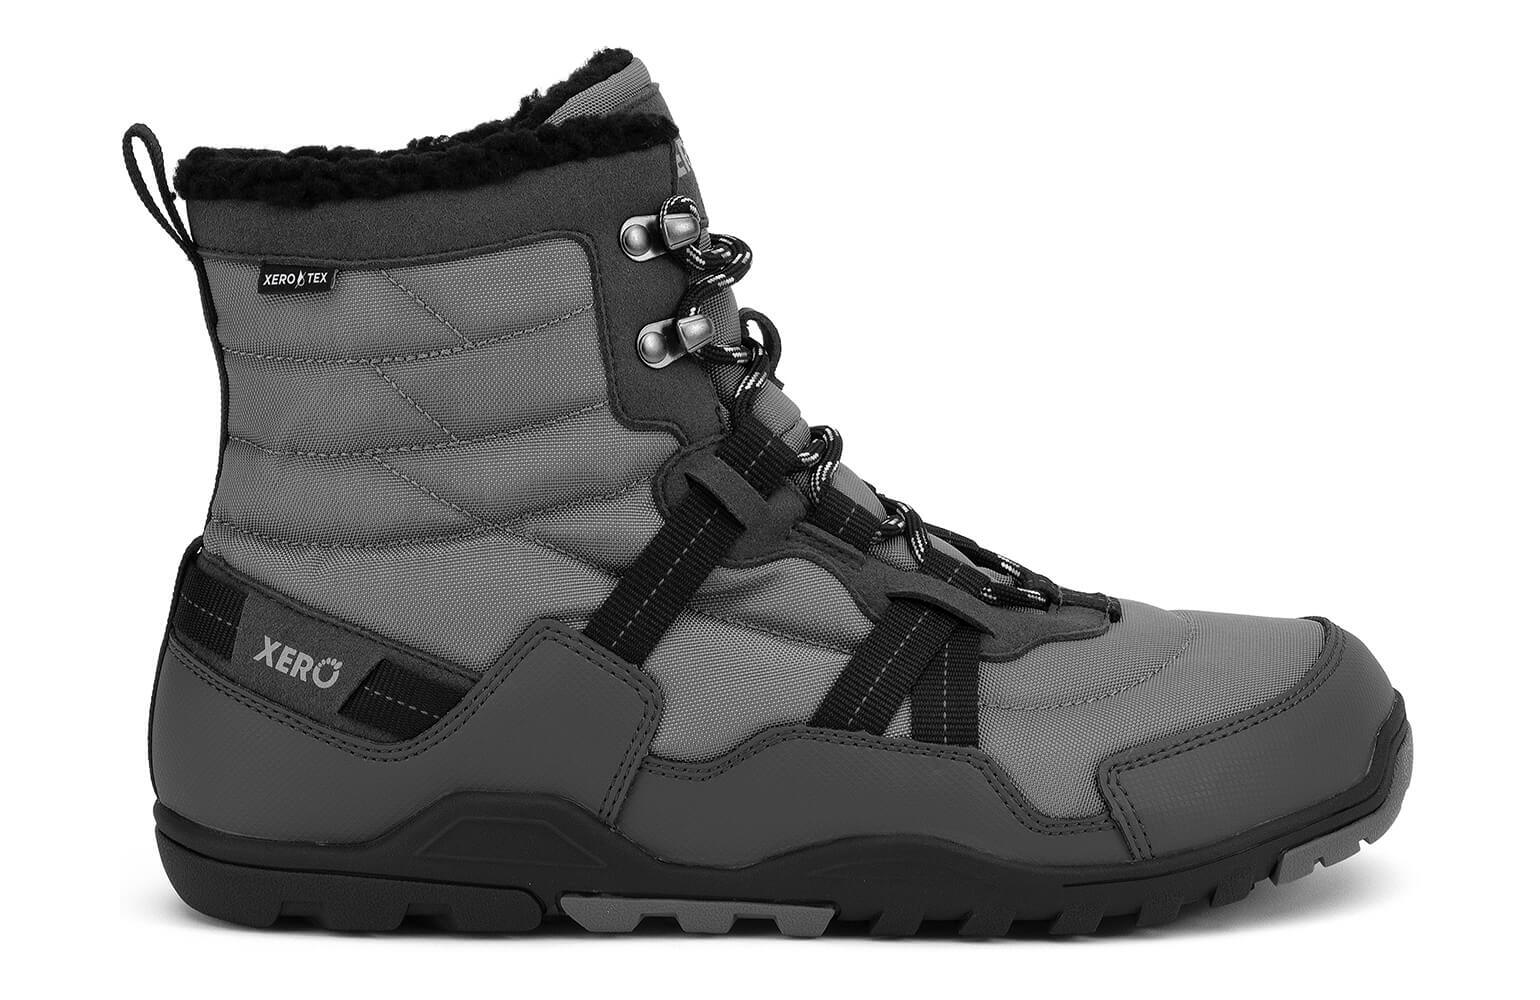 Xero Shoes | Alpine | asphalt black [AEM-ASB] heren, maat 43 eu